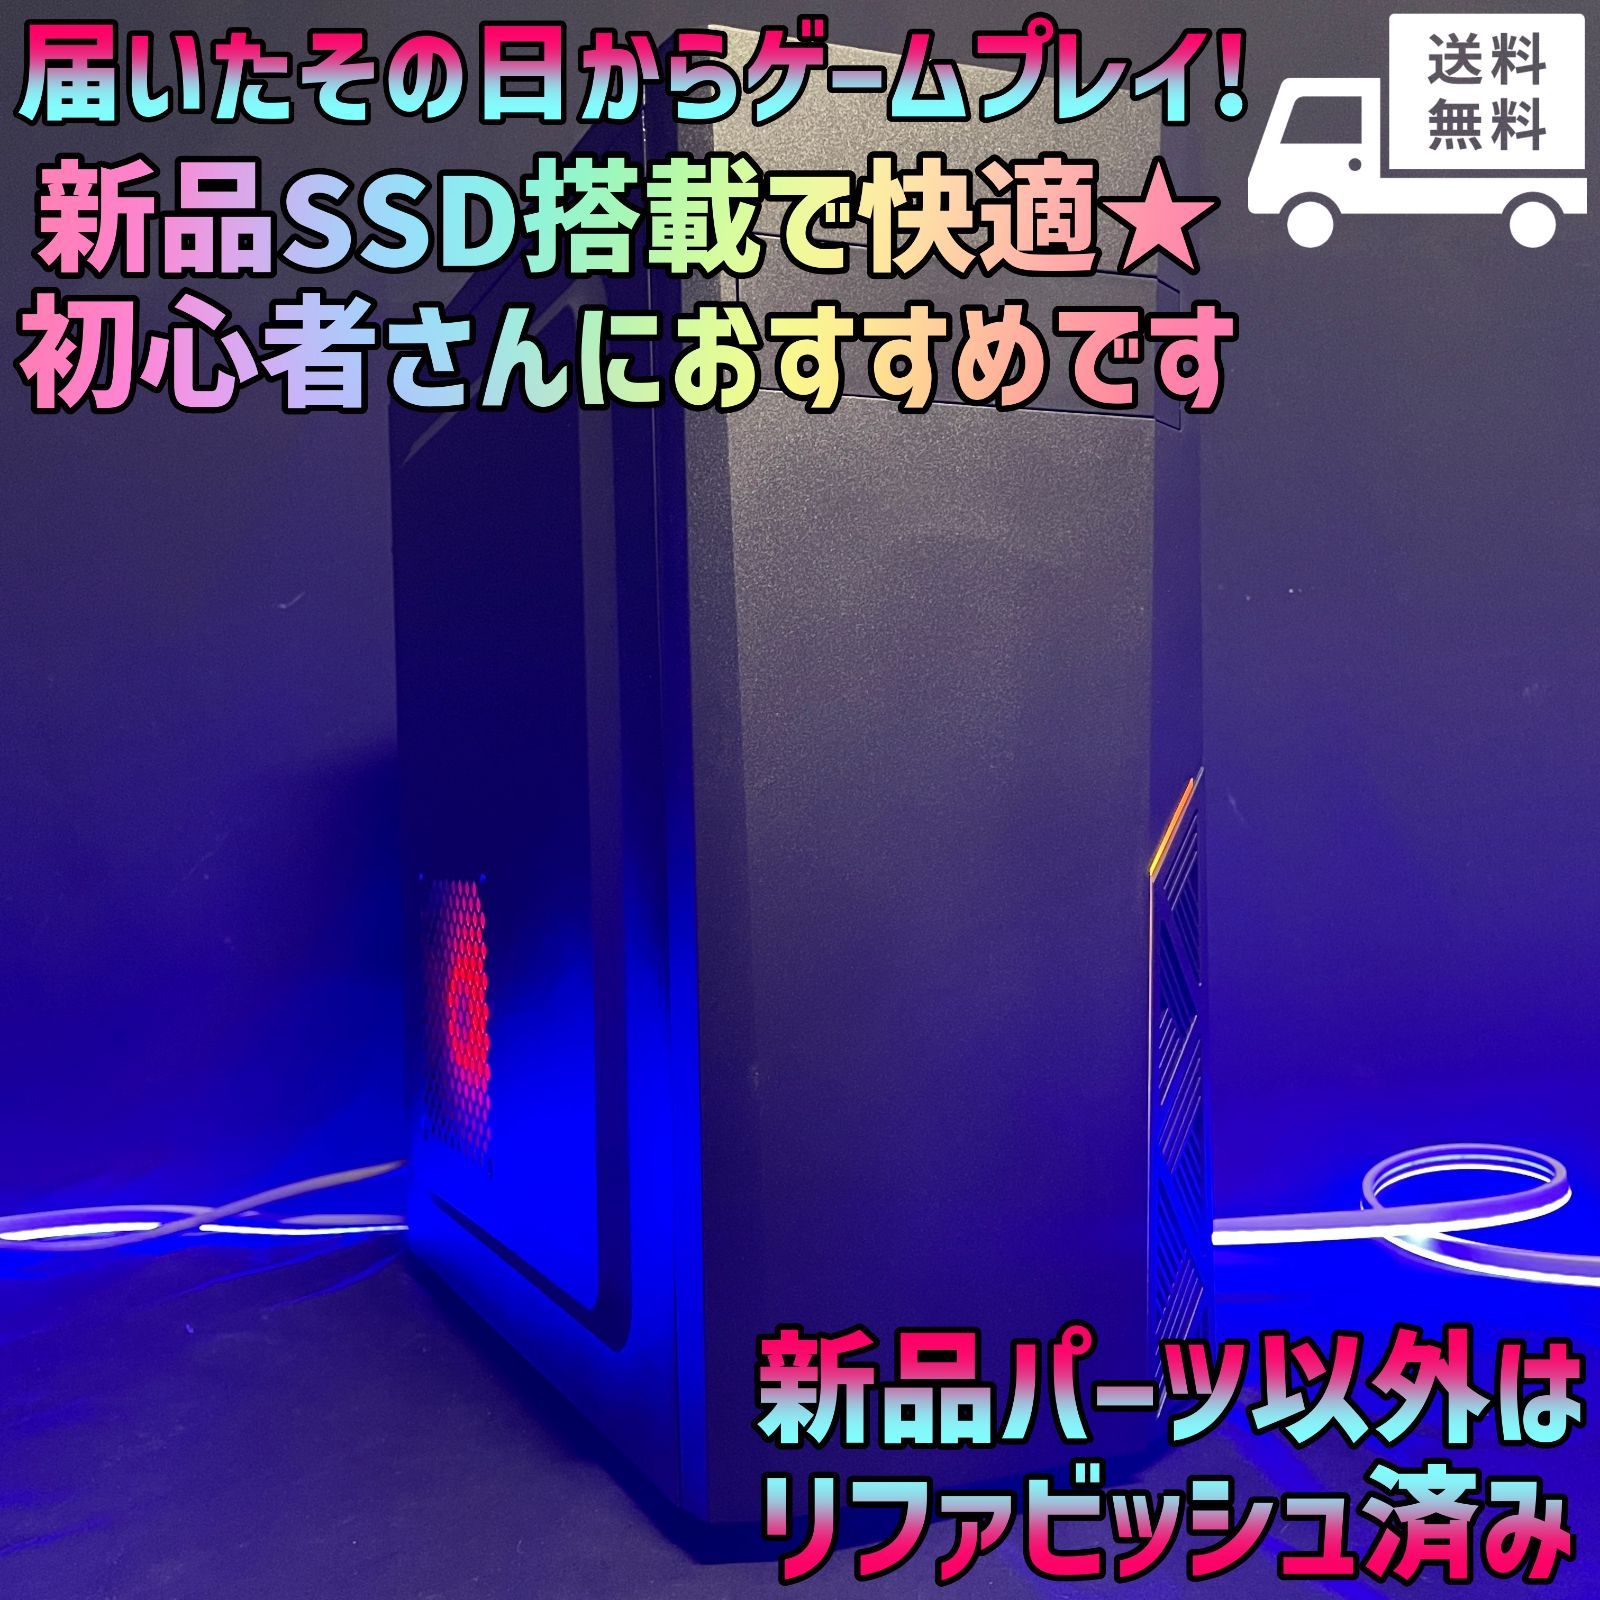 新品SSD搭載で快適☆初心者の方におすすめ☆ライトゲーミングPC☆GM-395-